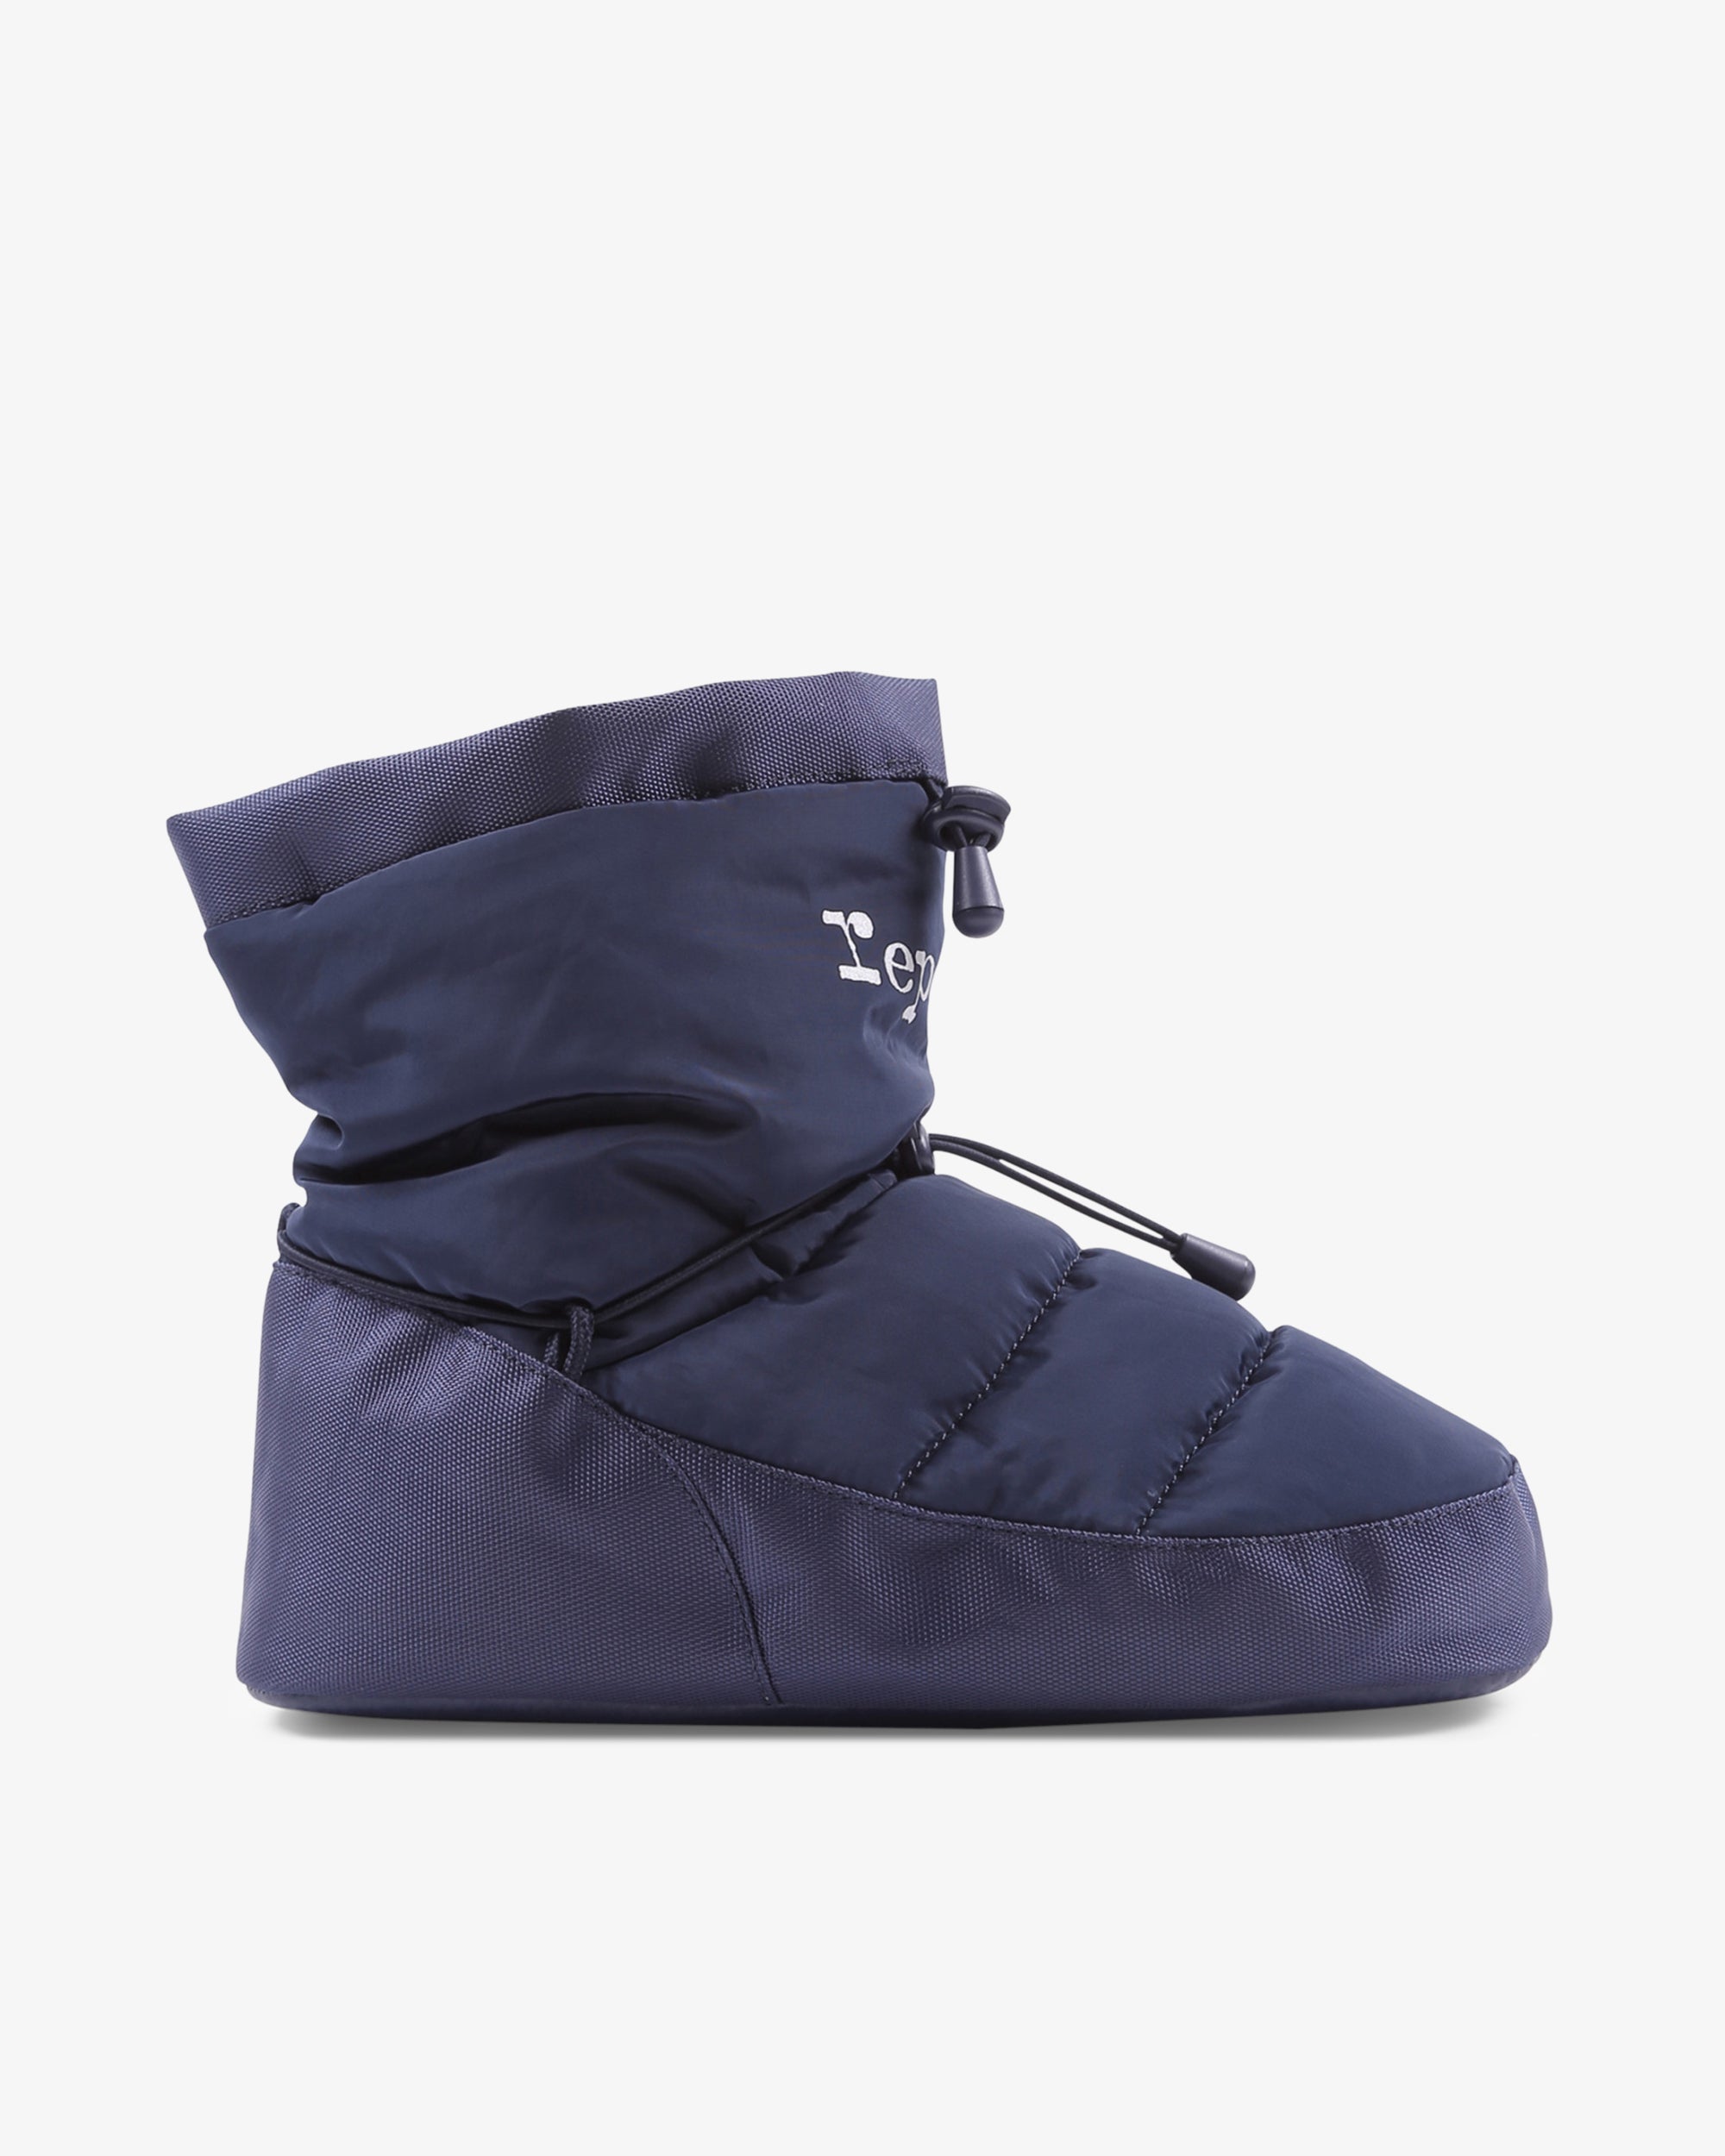 Repetto Paris | Warm-up boots | Color Navy blue